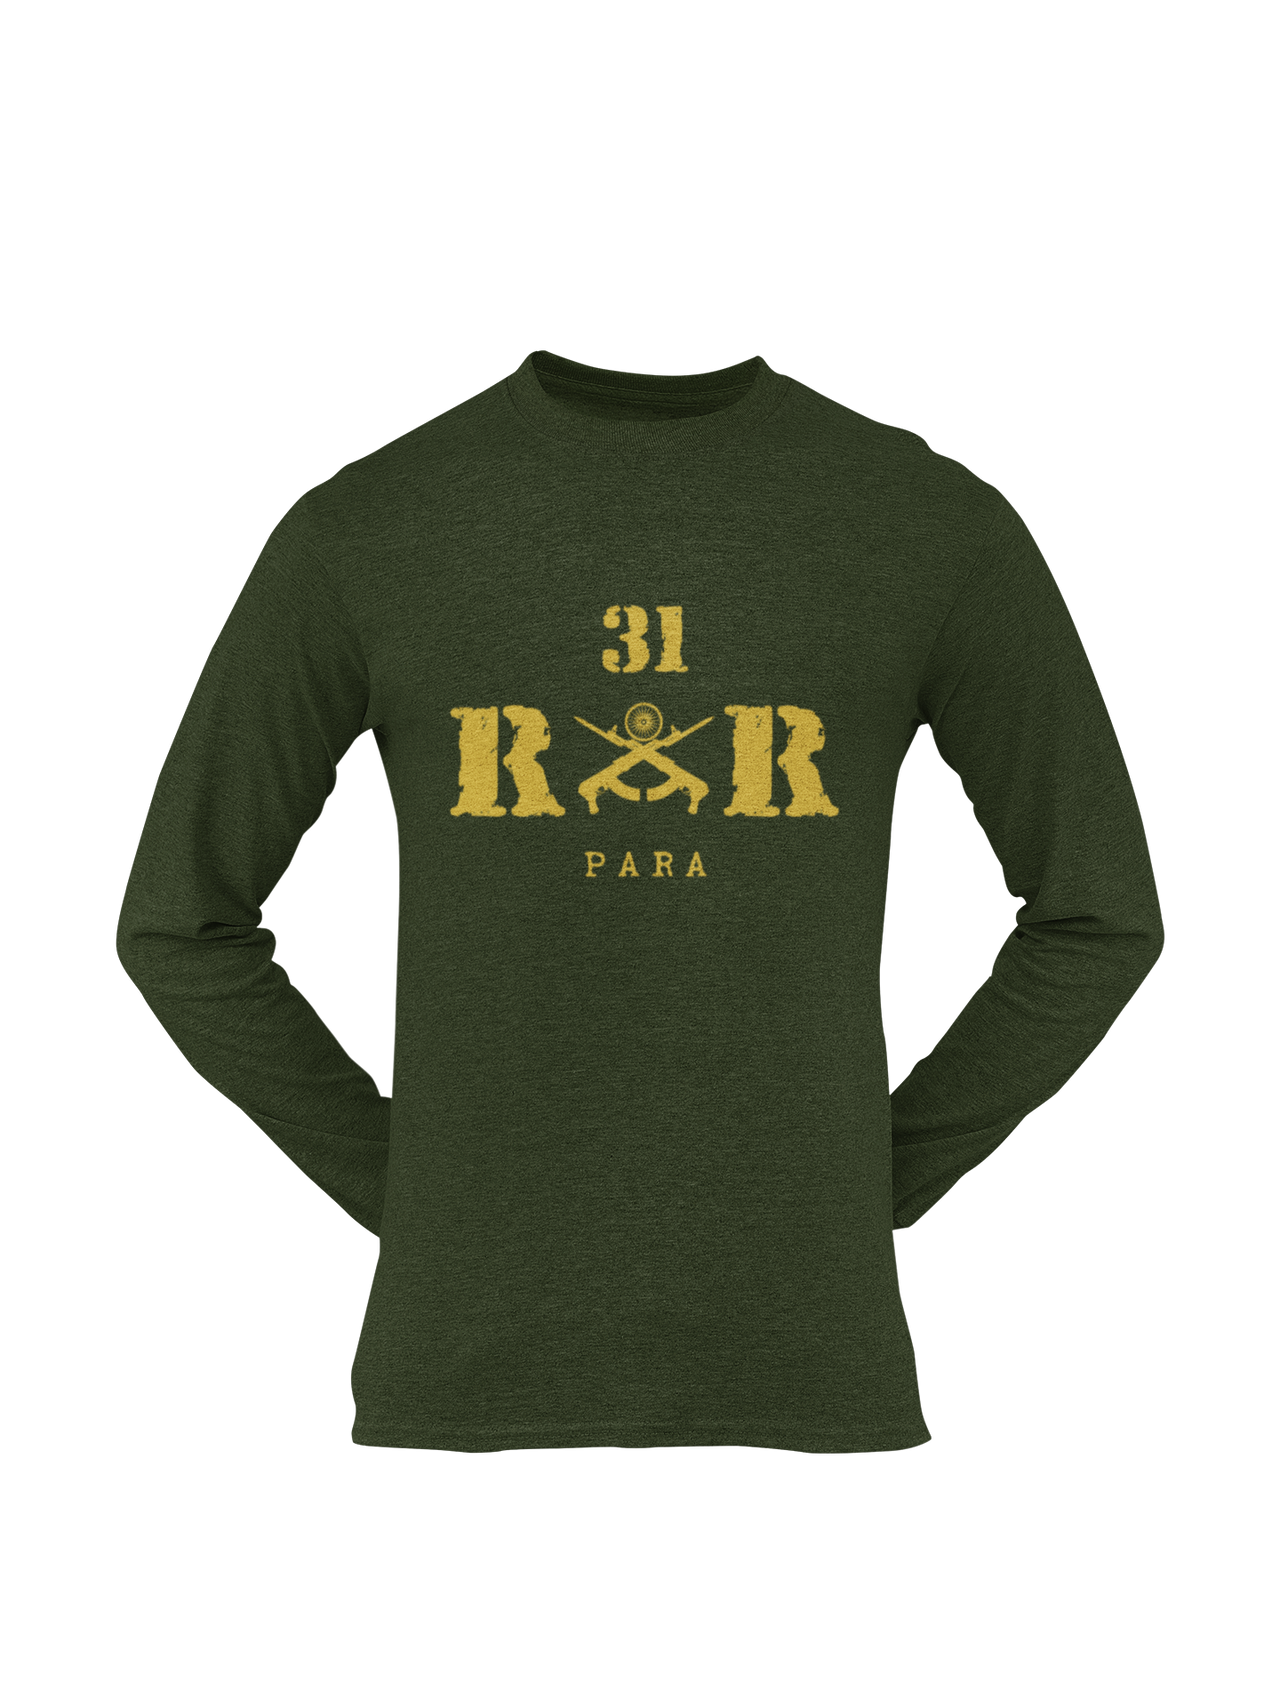 Rashtriya Rifles T-shirt - 31 RR Para (Men)